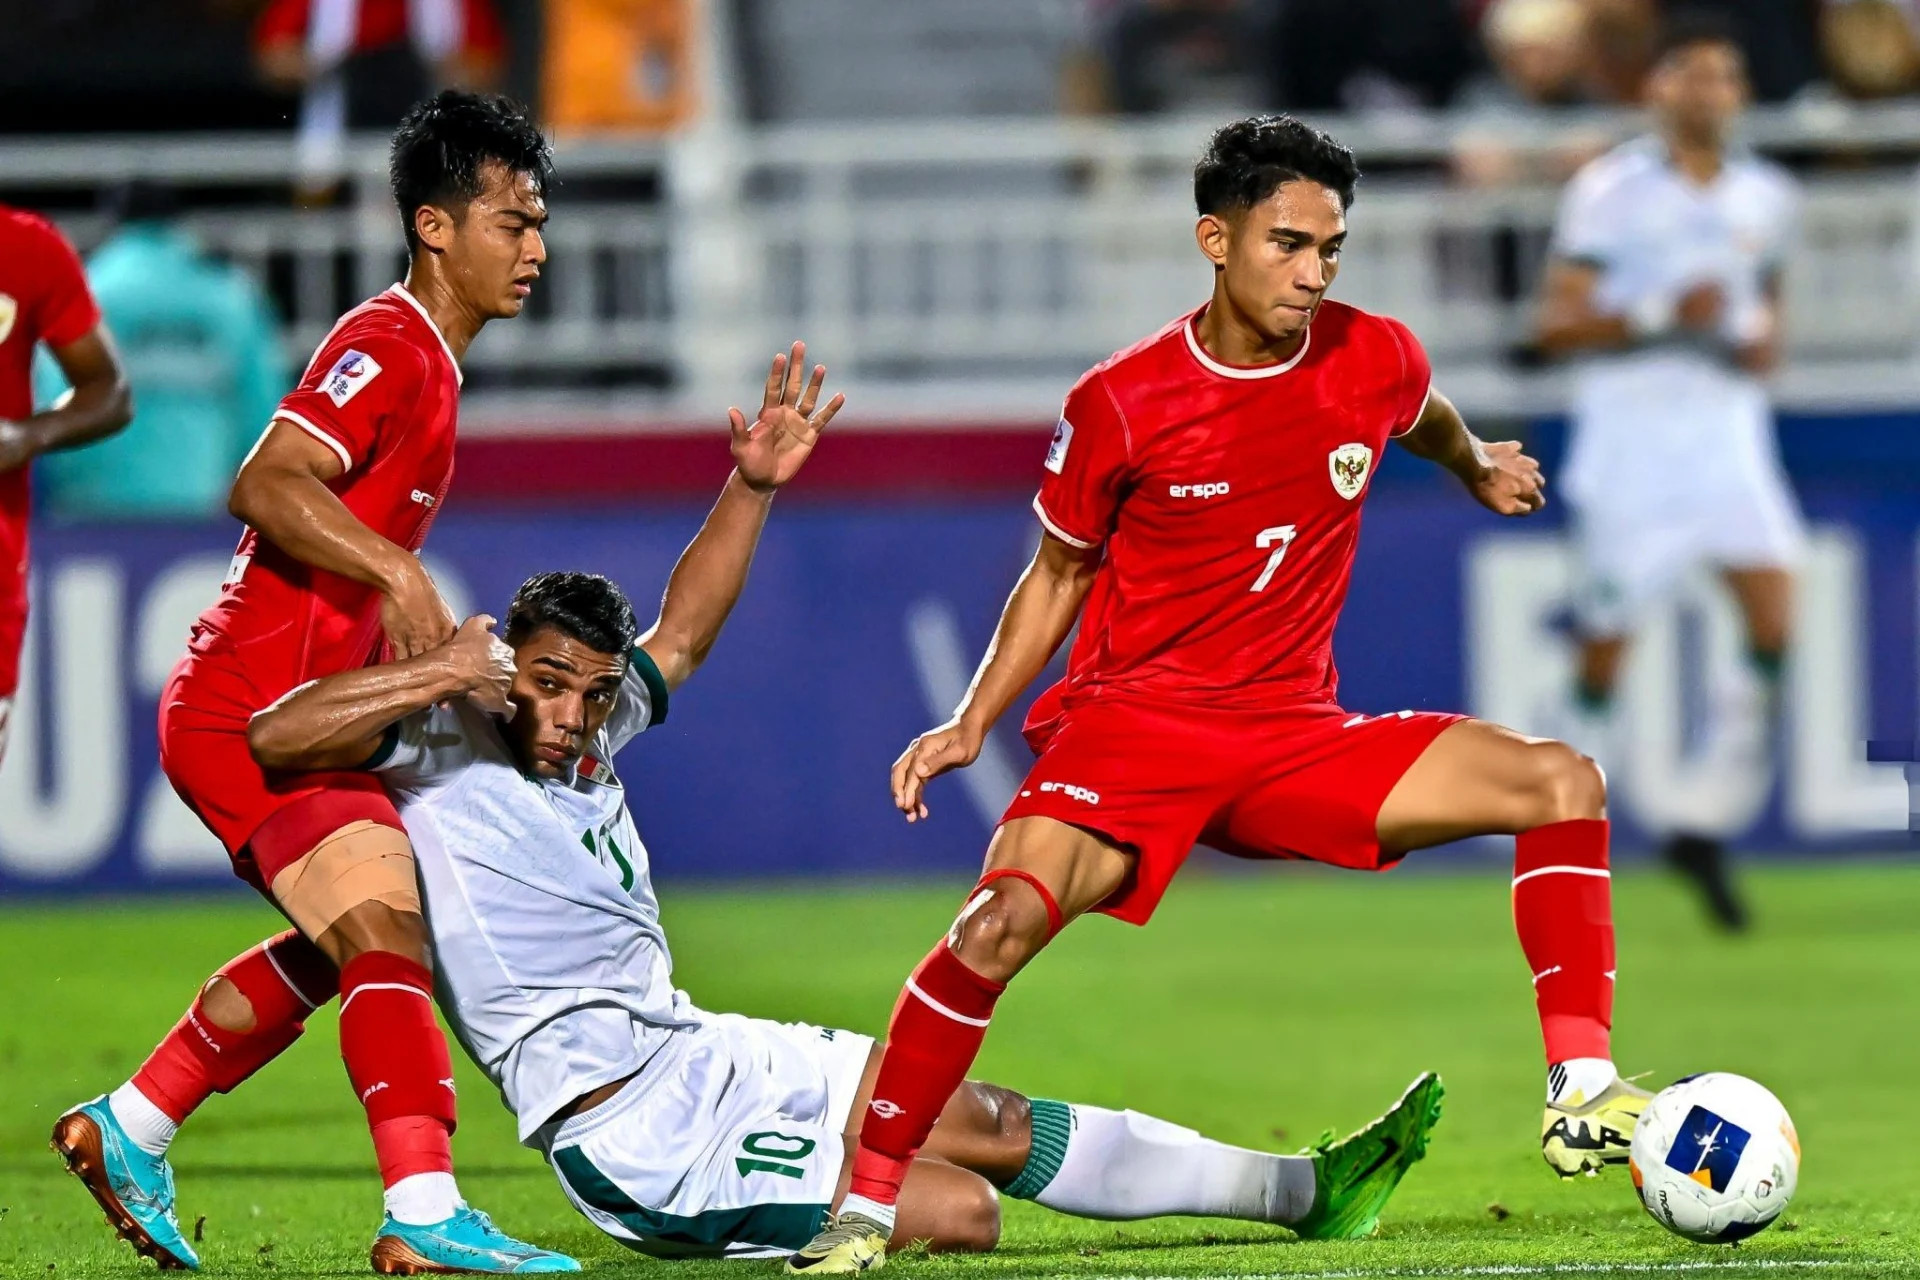  Trực tiếp bóng đá Indonesia 0-1 Iraq: Aymen mở tỷ số, chủ nhà bị thẻ đỏ